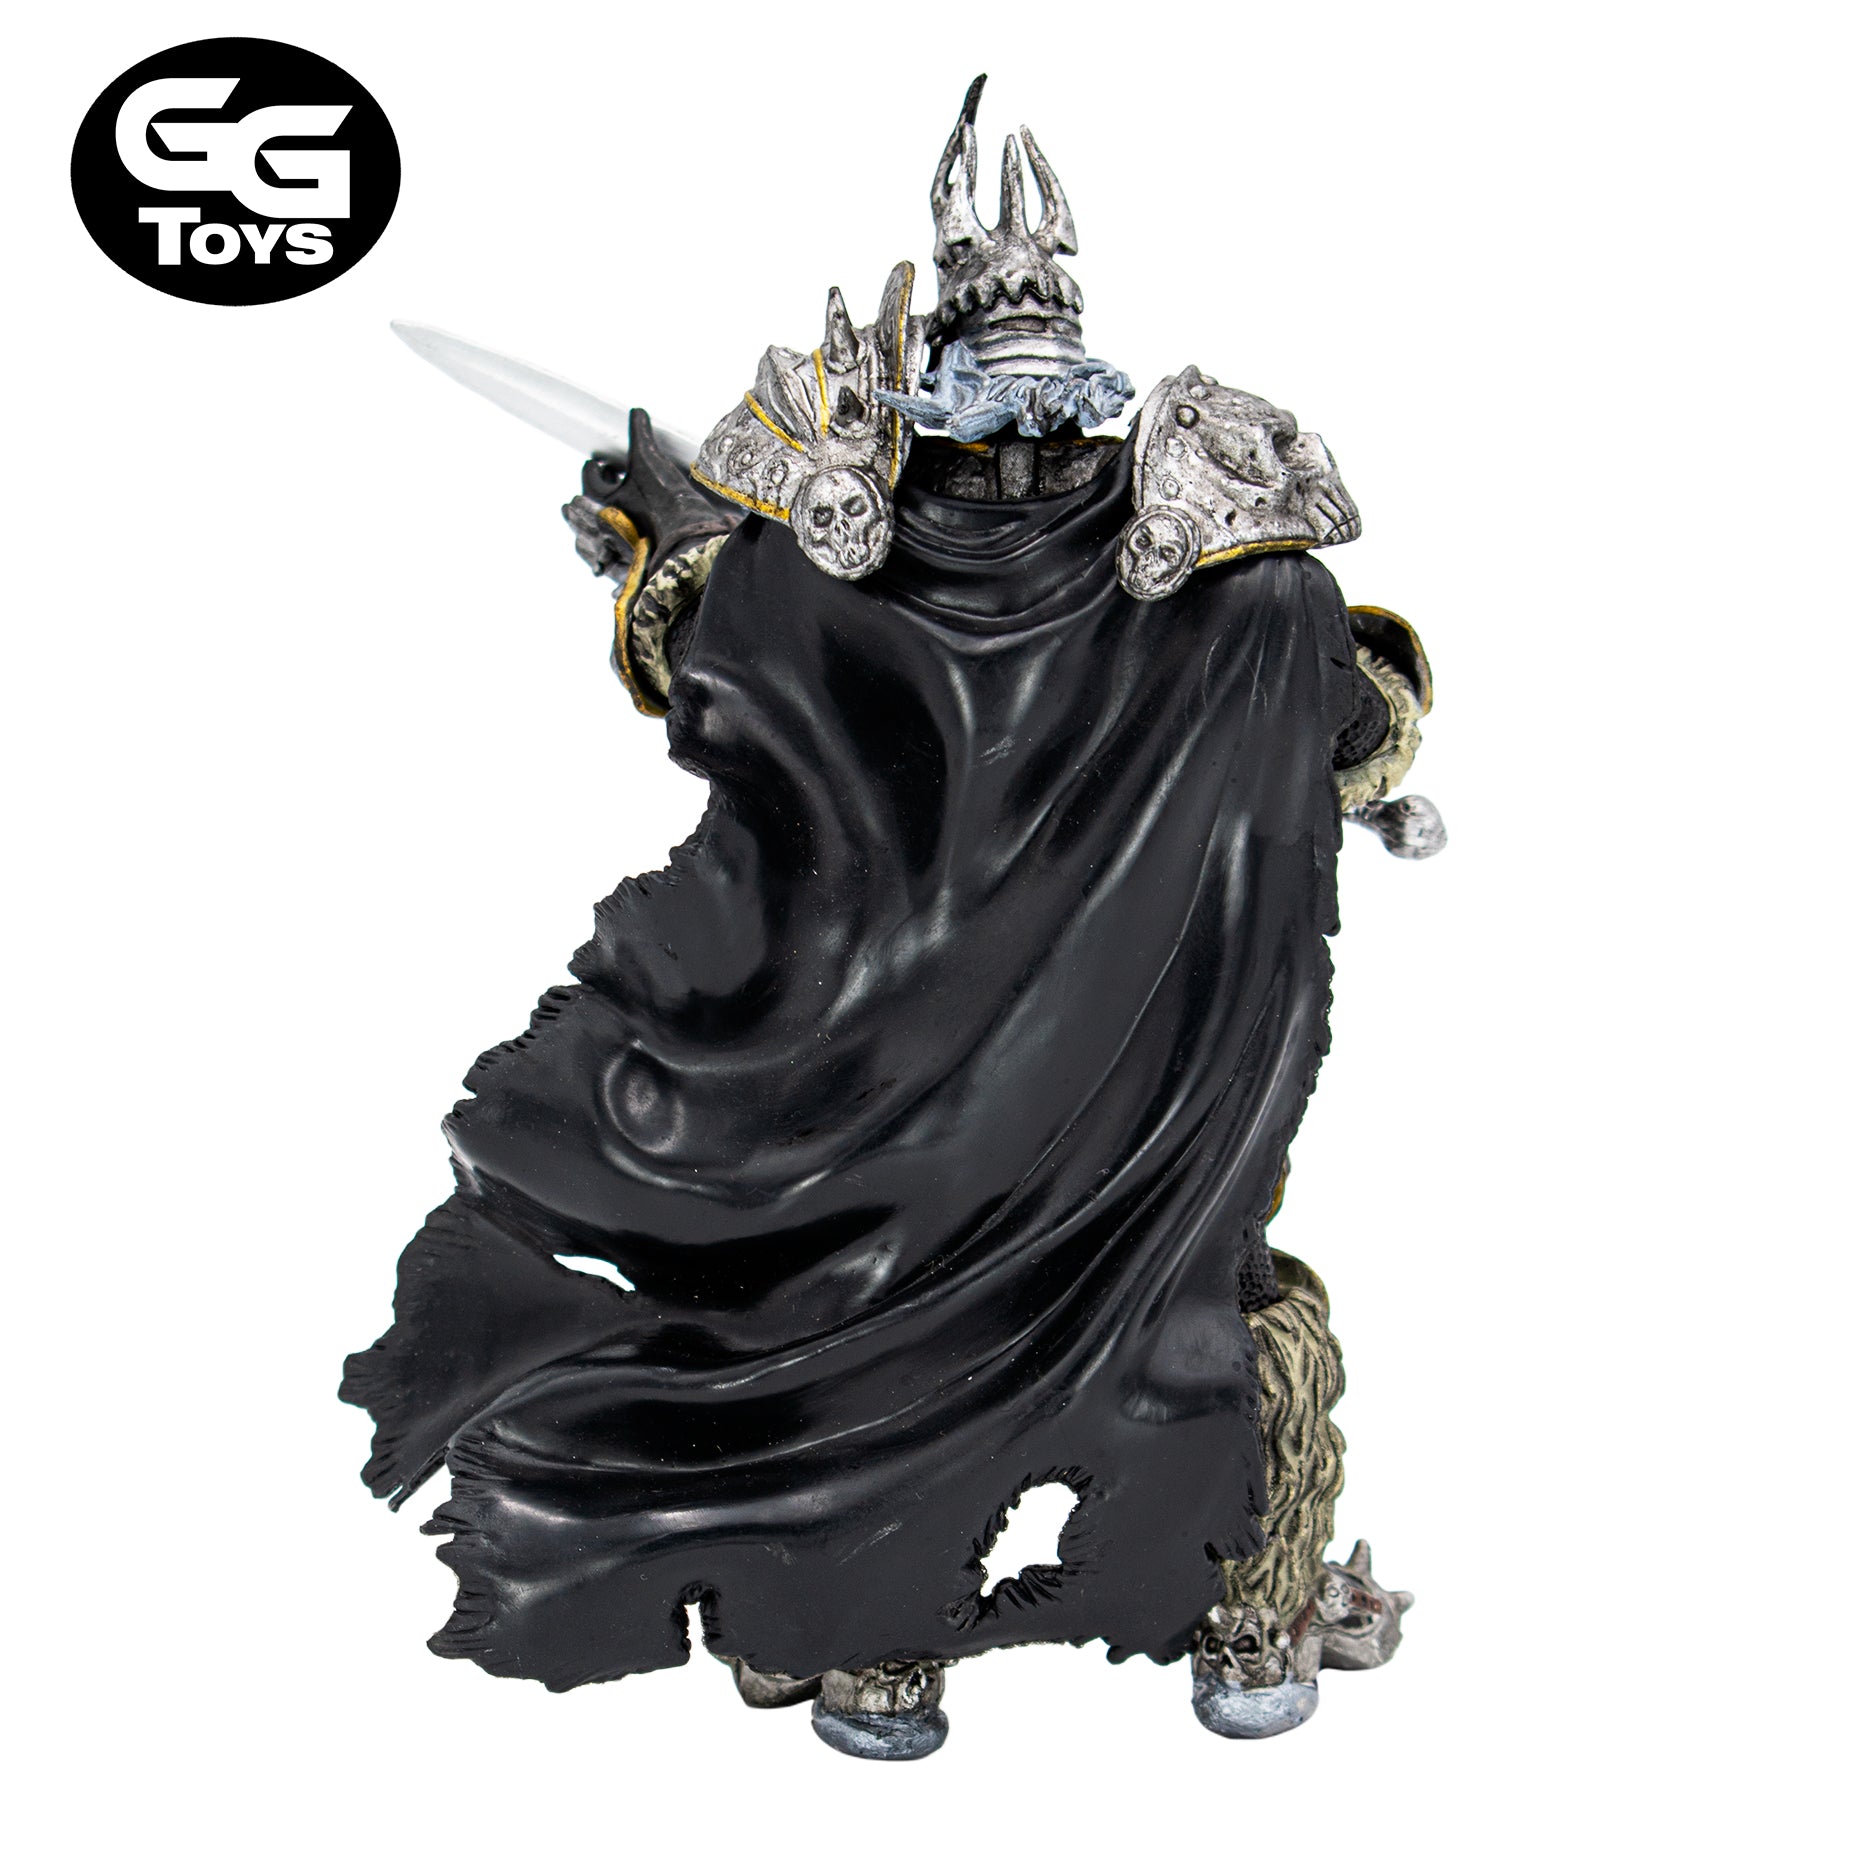 Lich King - World of Warcraft - Figura de Acción 17 cm - En Caja - PVC / Plástico